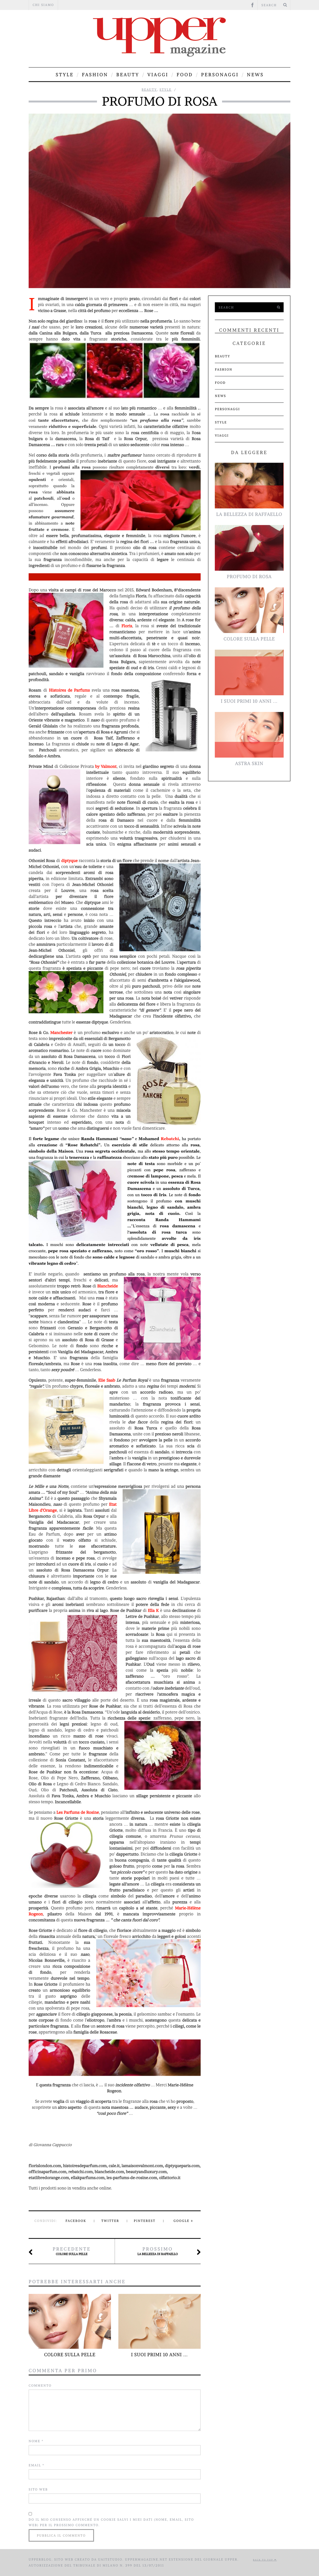 062021 profumi rosa officina parfum upper magazine